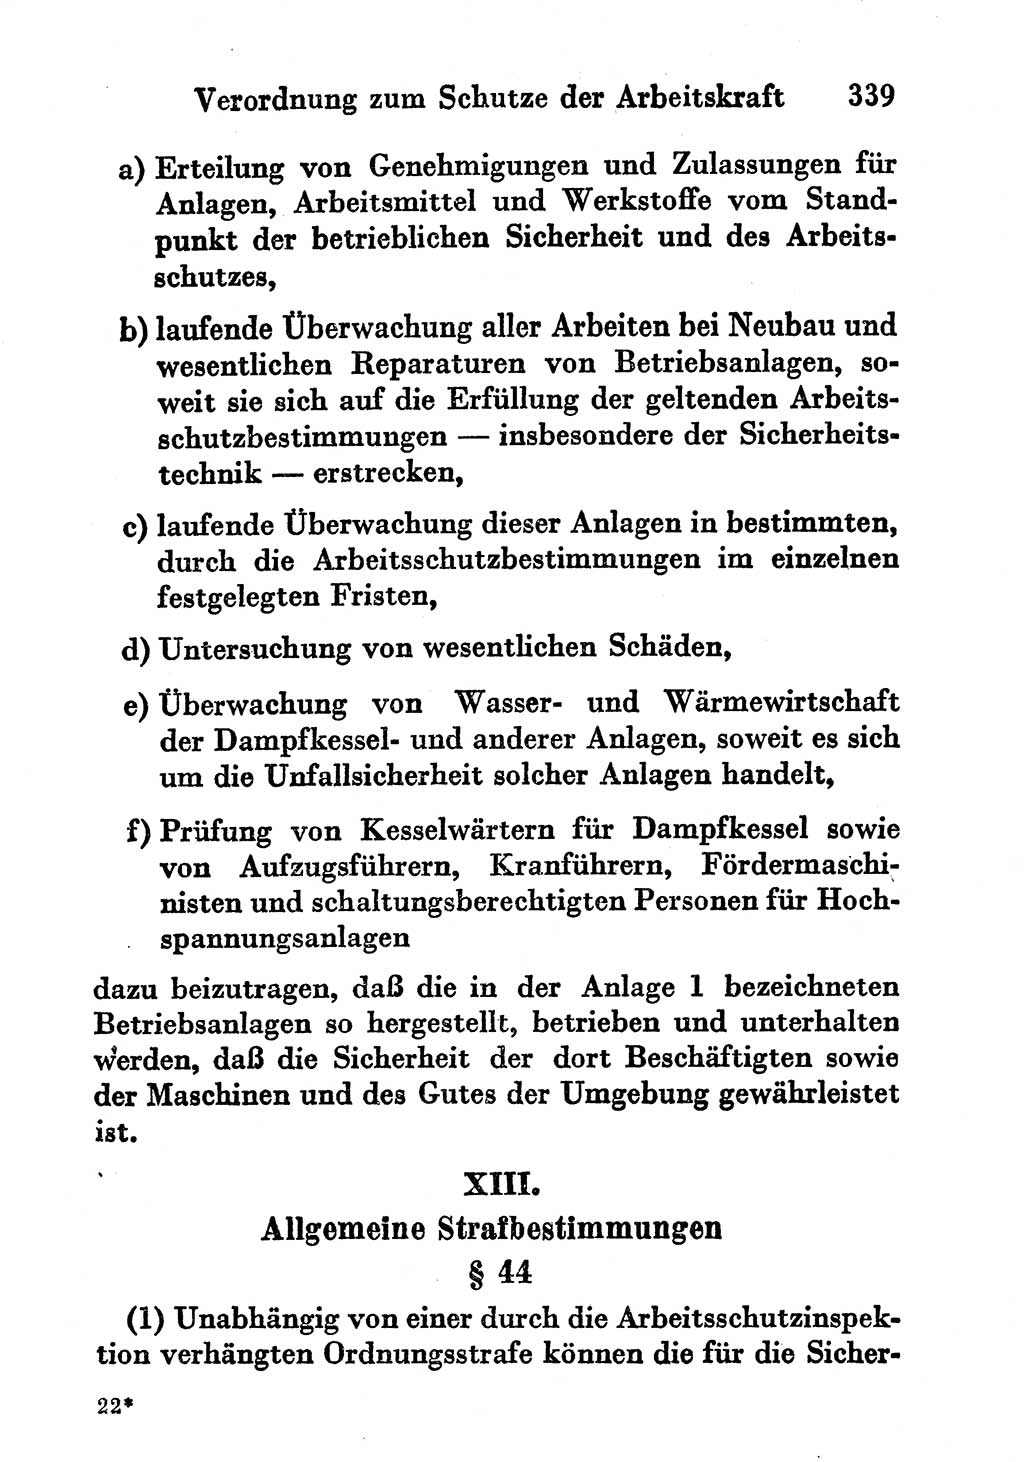 Strafgesetzbuch (StGB) und andere Strafgesetze [Deutsche Demokratische Republik (DDR)] 1956, Seite 339 (StGB Strafges. DDR 1956, S. 339)